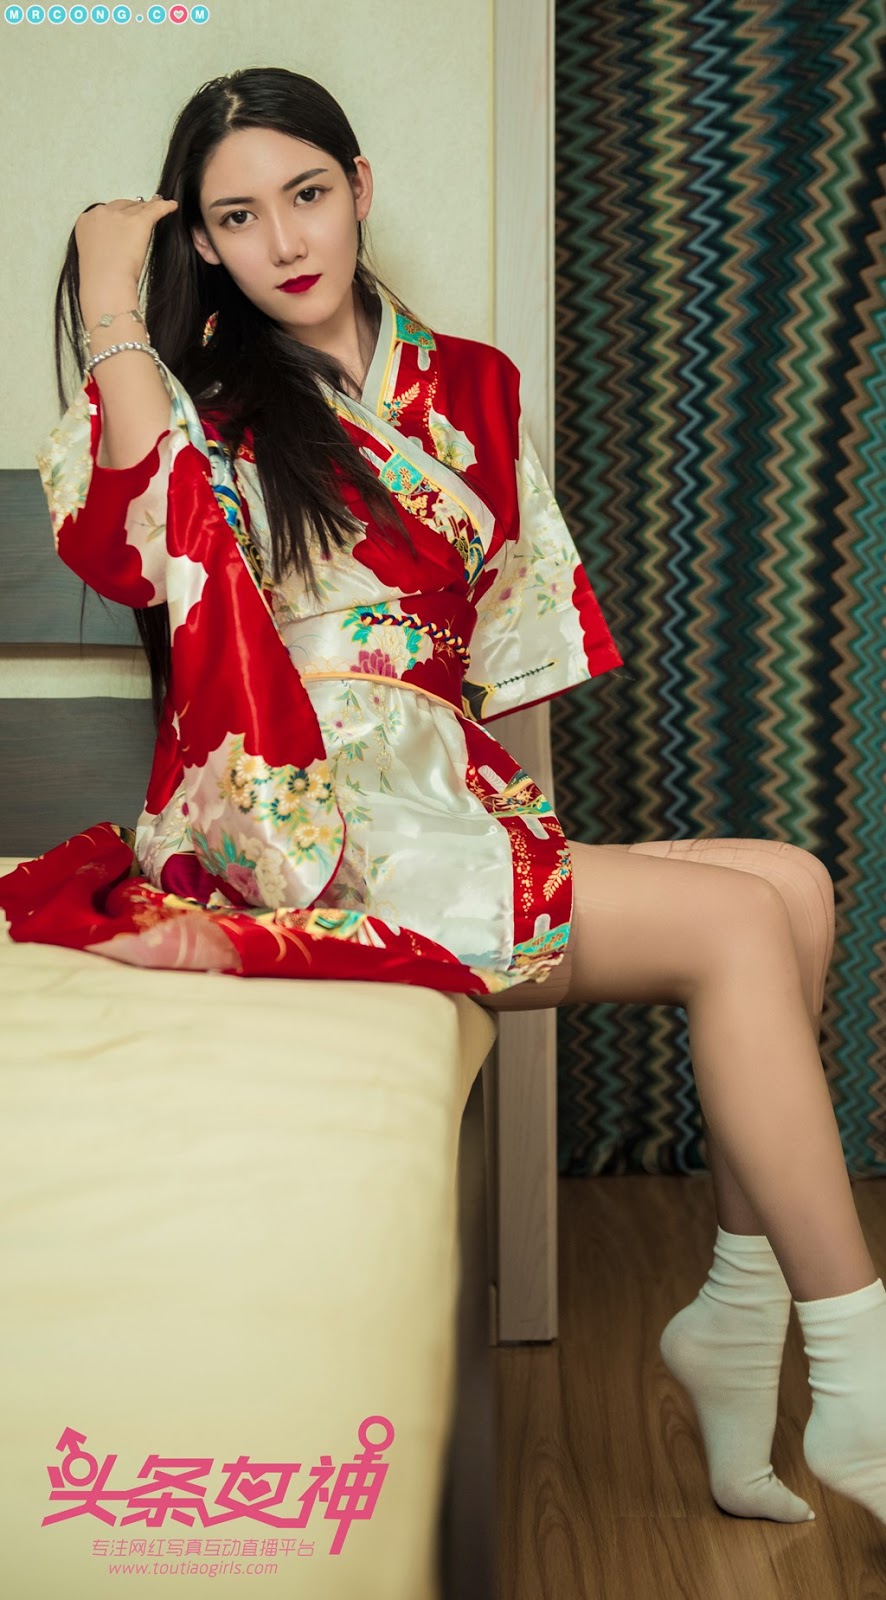 TouTiao 2018-04-08: Model Feng Xue Jiao (冯雪娇) (63 photos)